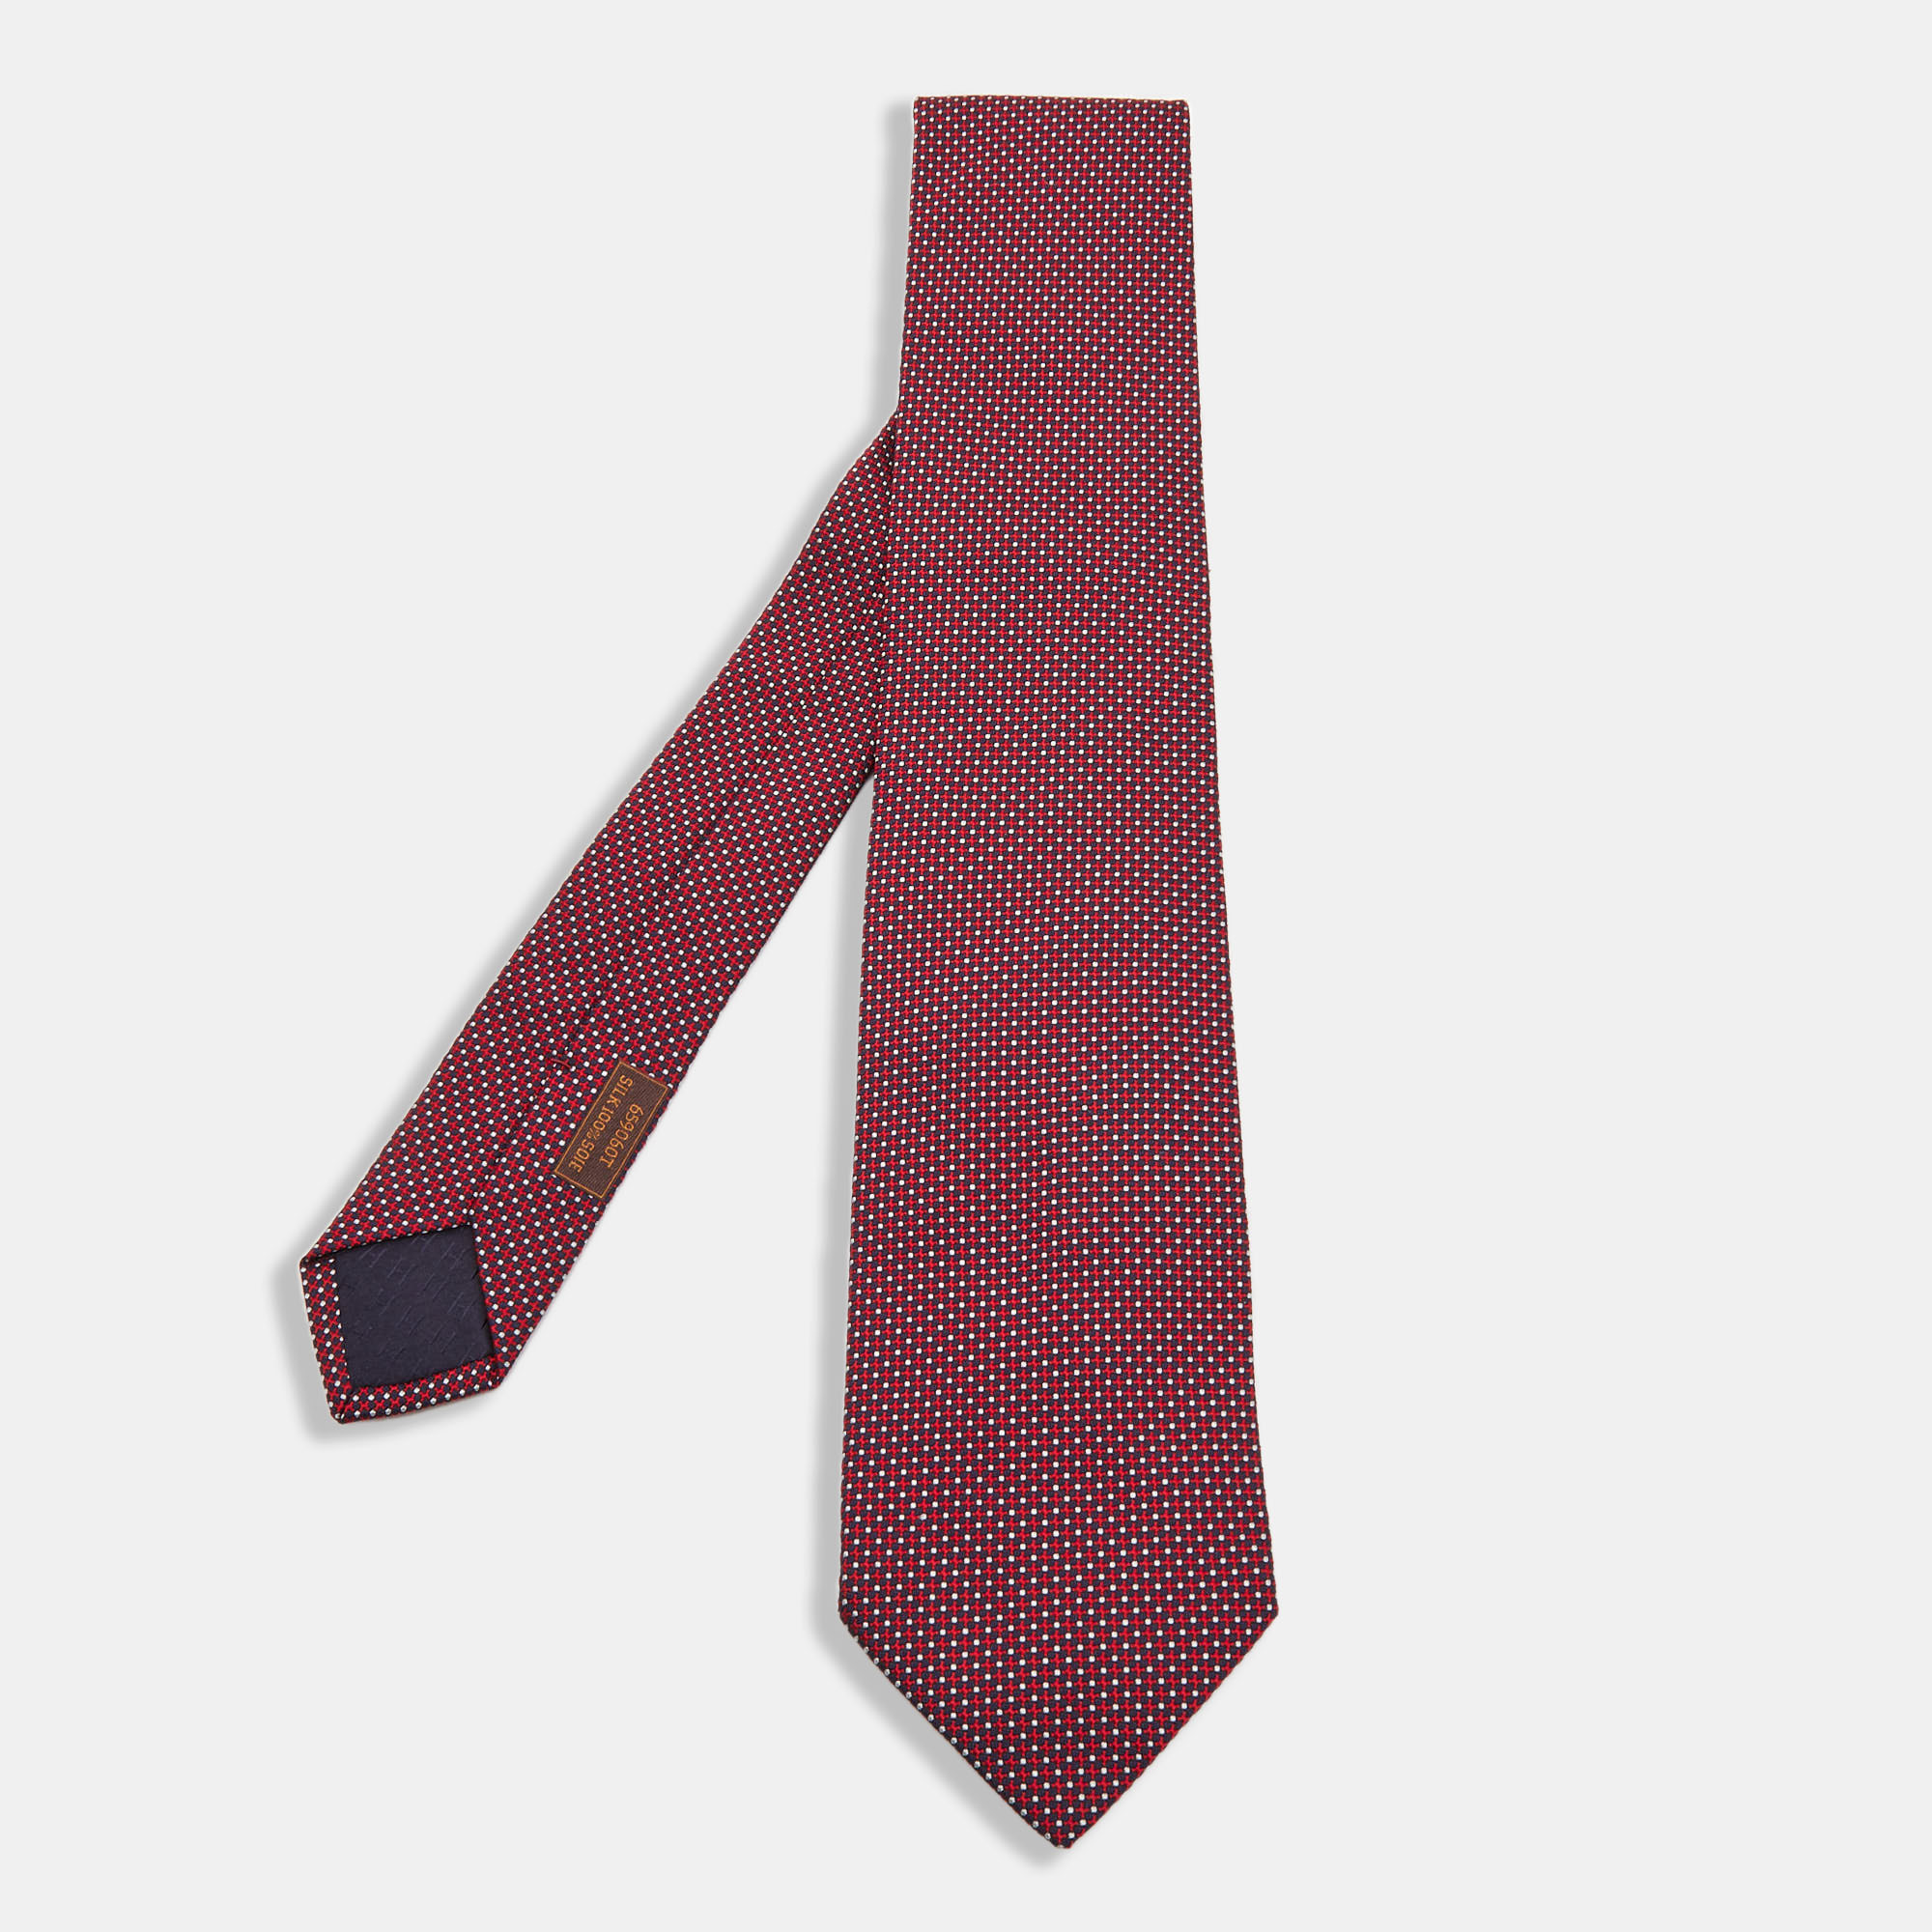 Hermes Red/Navy Blue Patterned Silk Tie